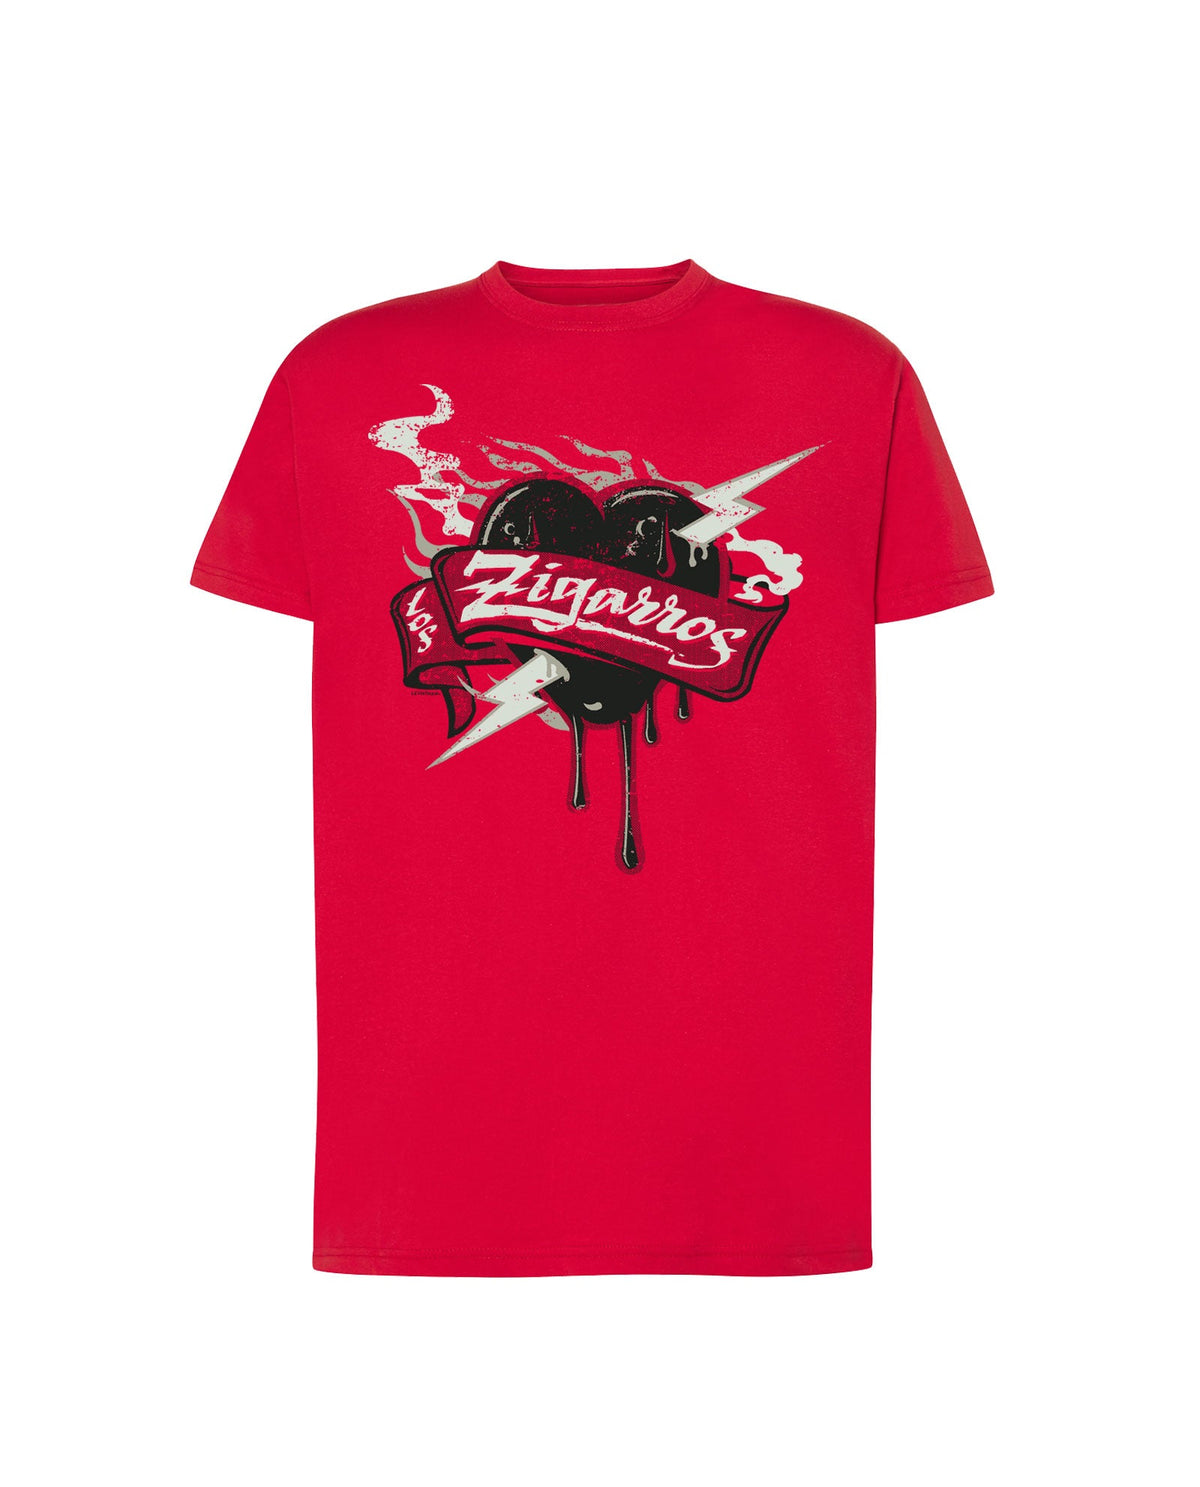 Camiseta Roja "Corazón" - Los Zigarros - Rocktud - Los Zigarros